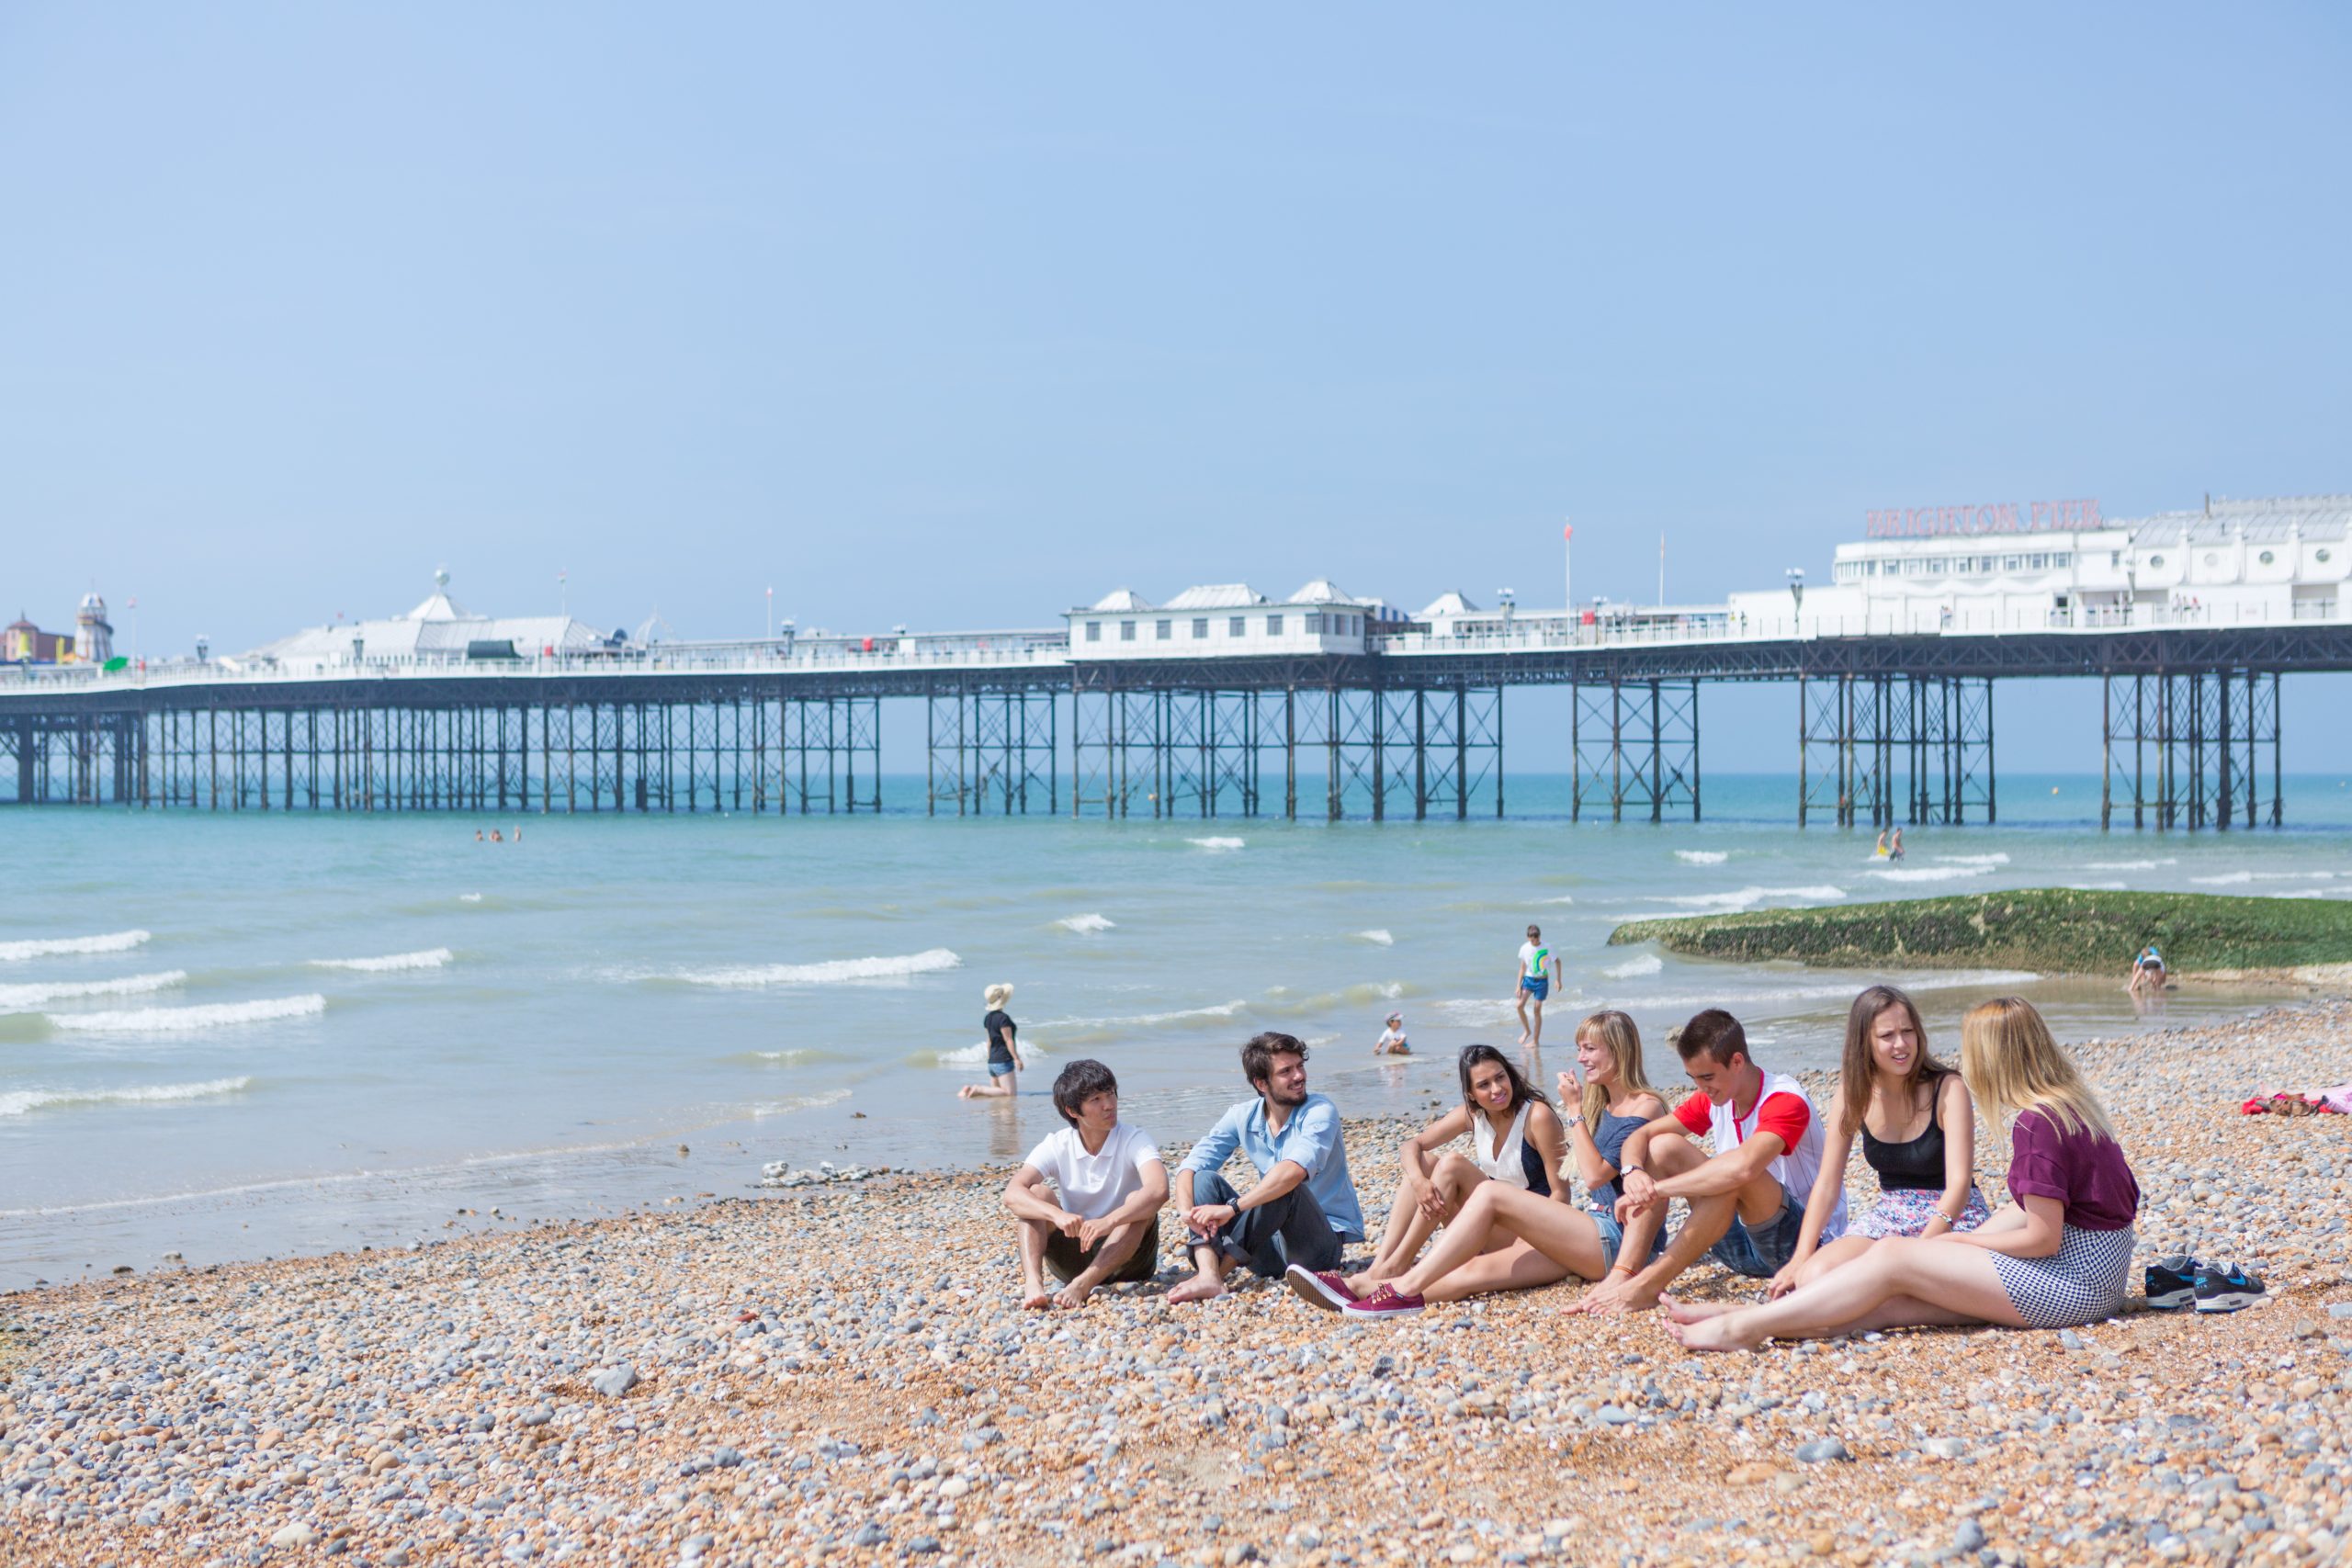 Enjoy&Speak – Brighton Pier